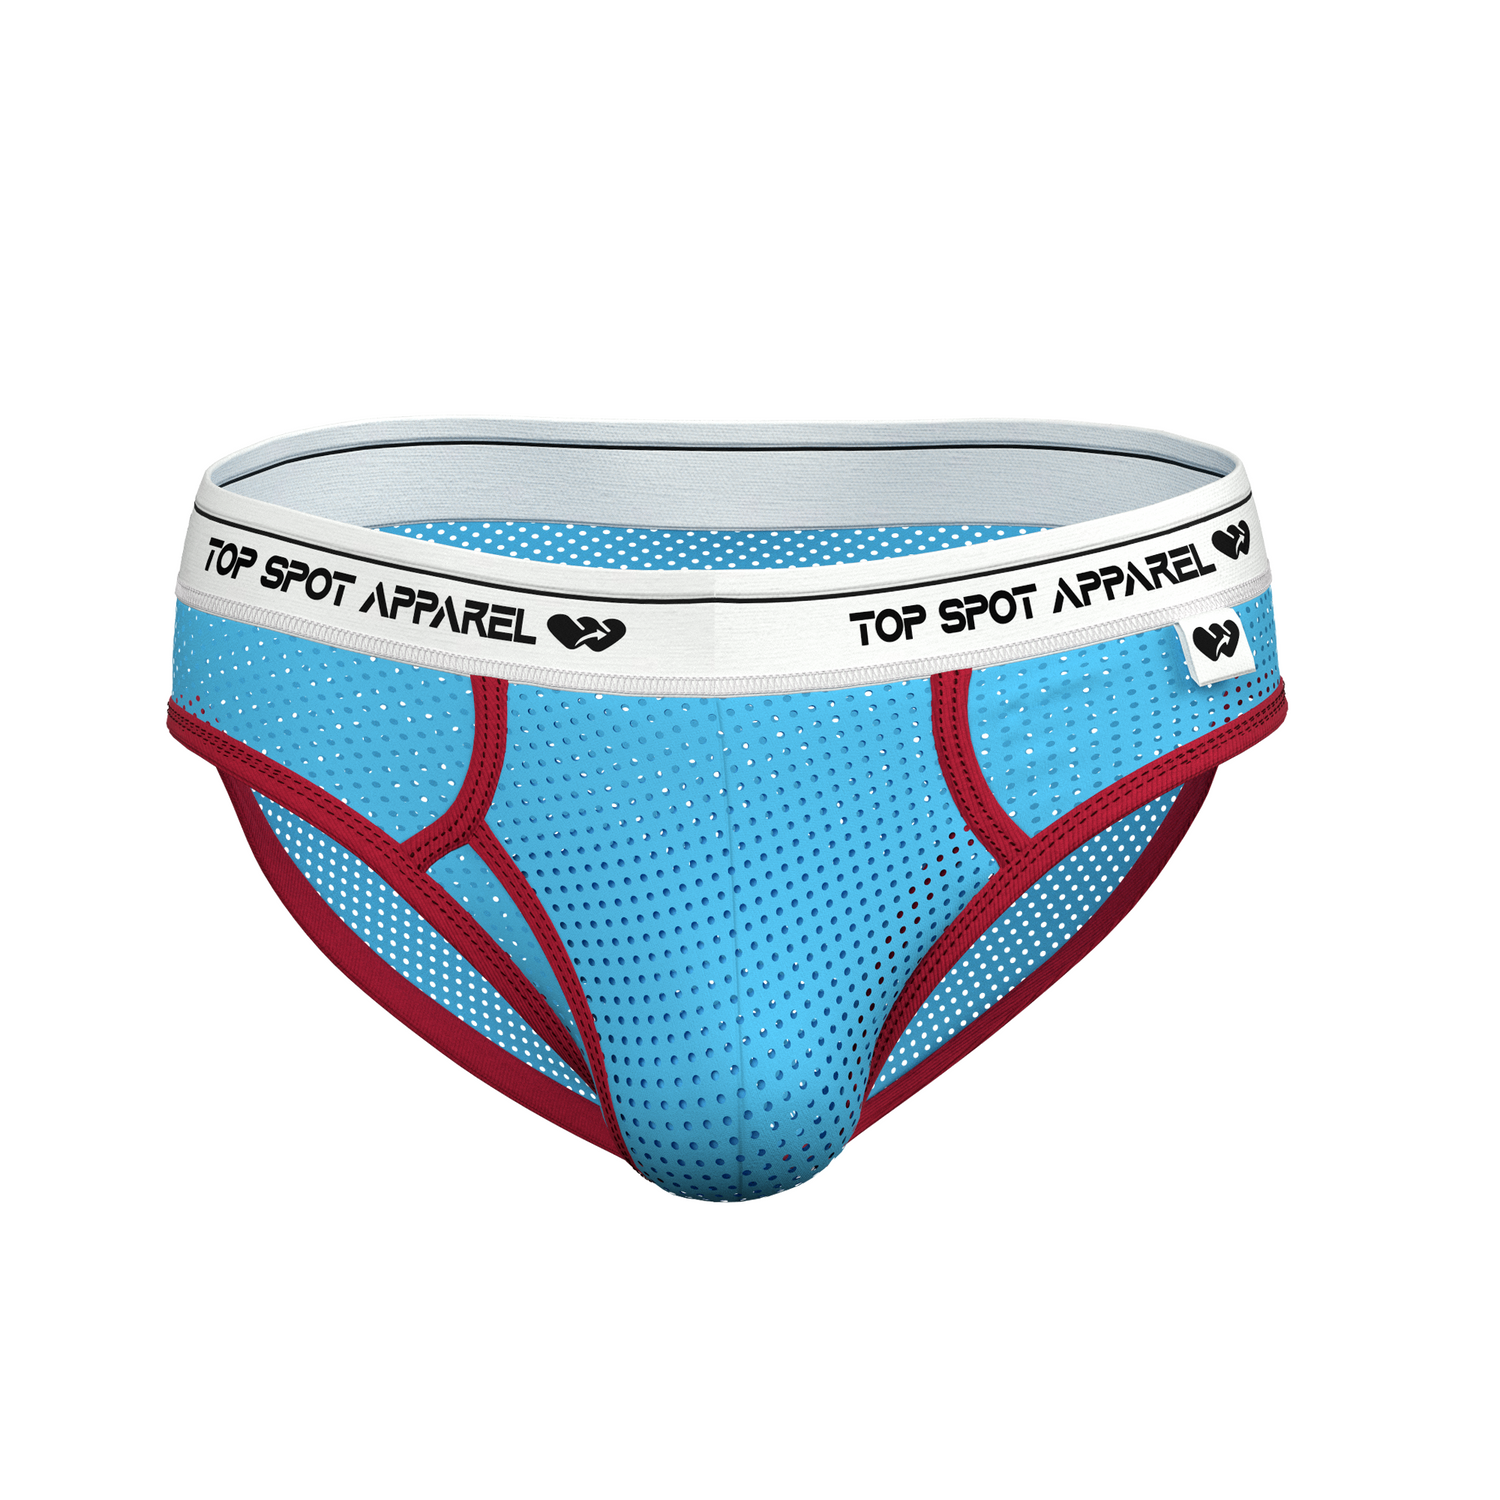 Men's Swim Briefs Trunks Gymwear Underwear Socks and Gear – Top Spot Apparel